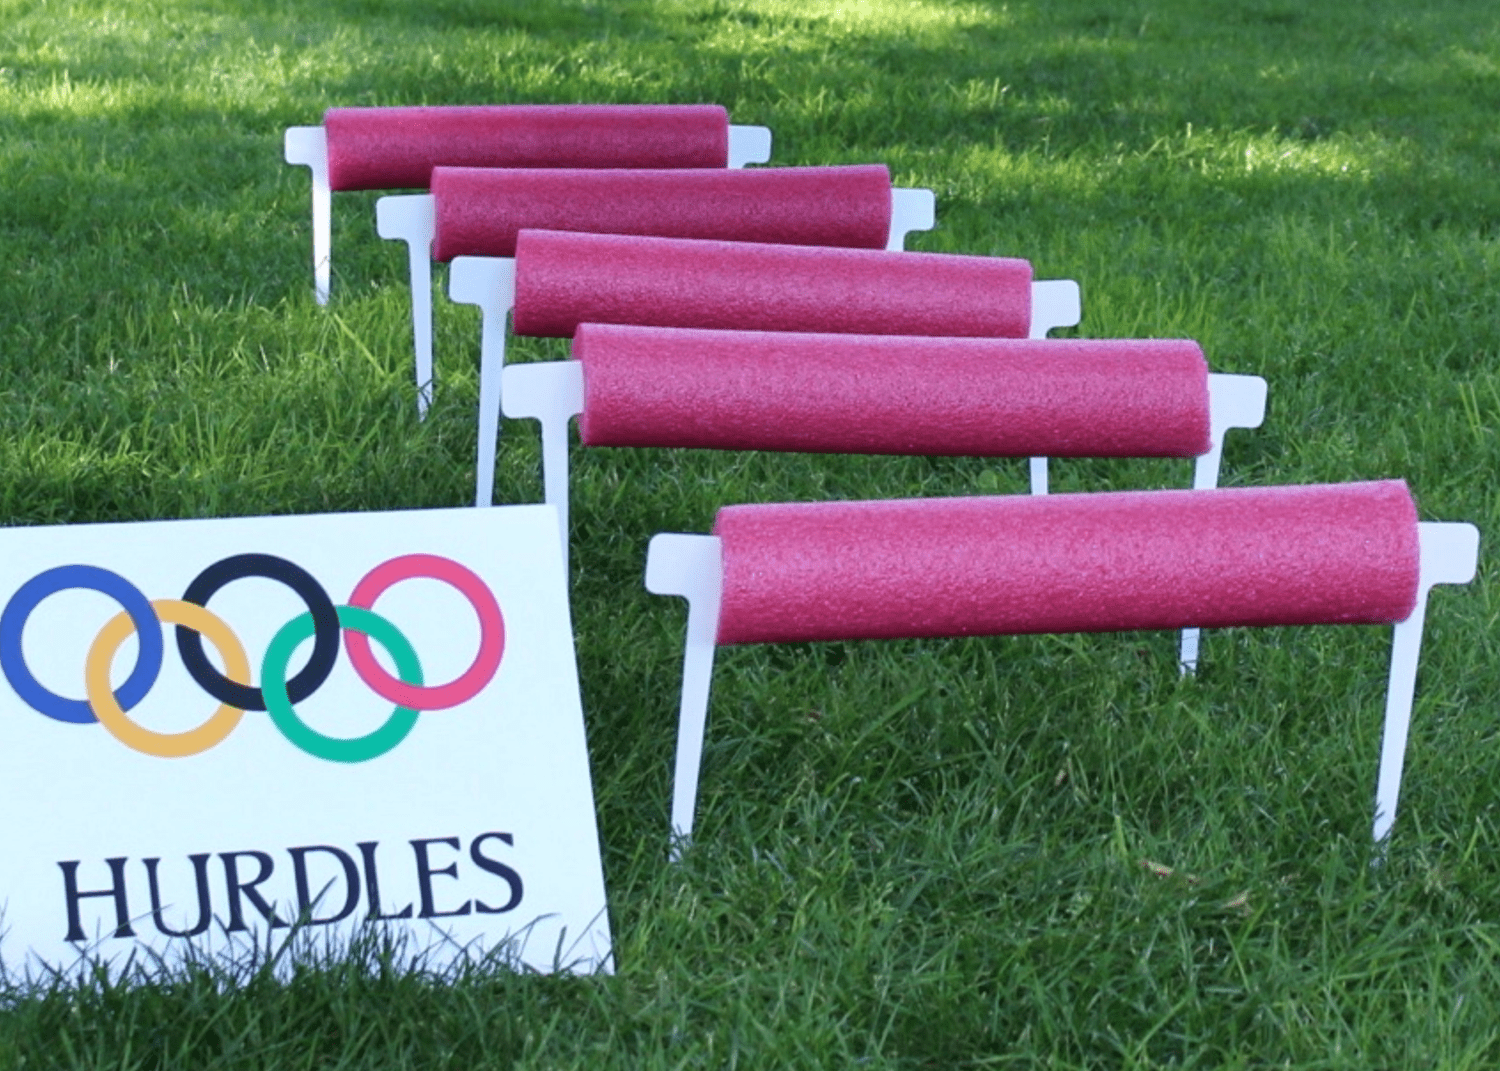 DIY Olympic hurdles game